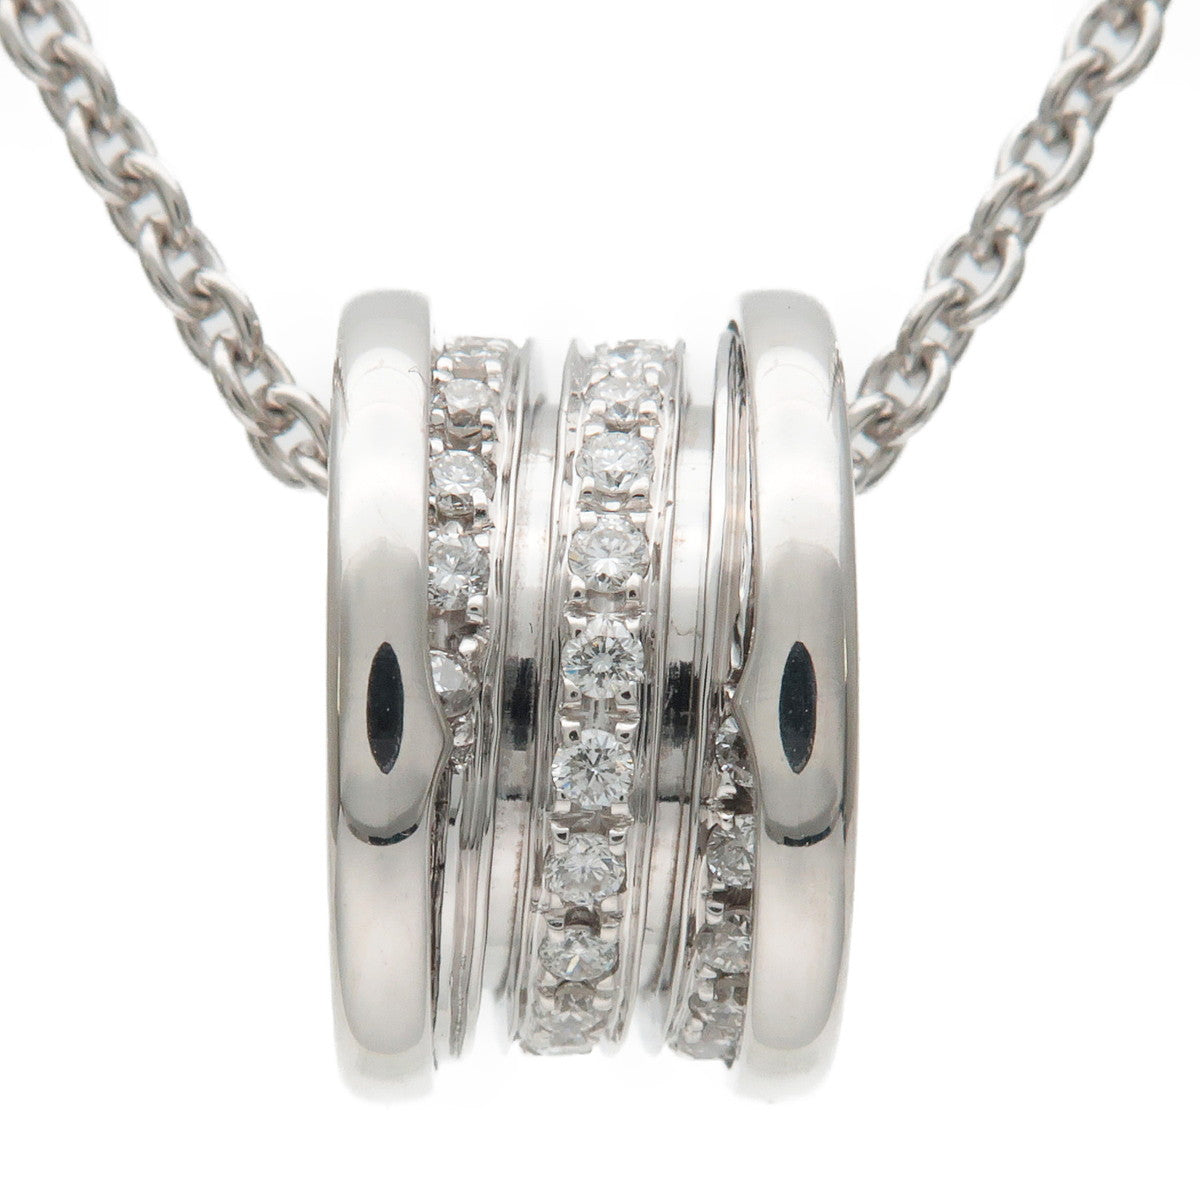 BVLGARI B-zero1 Diamond Necklace Pendant K18WG White Gold